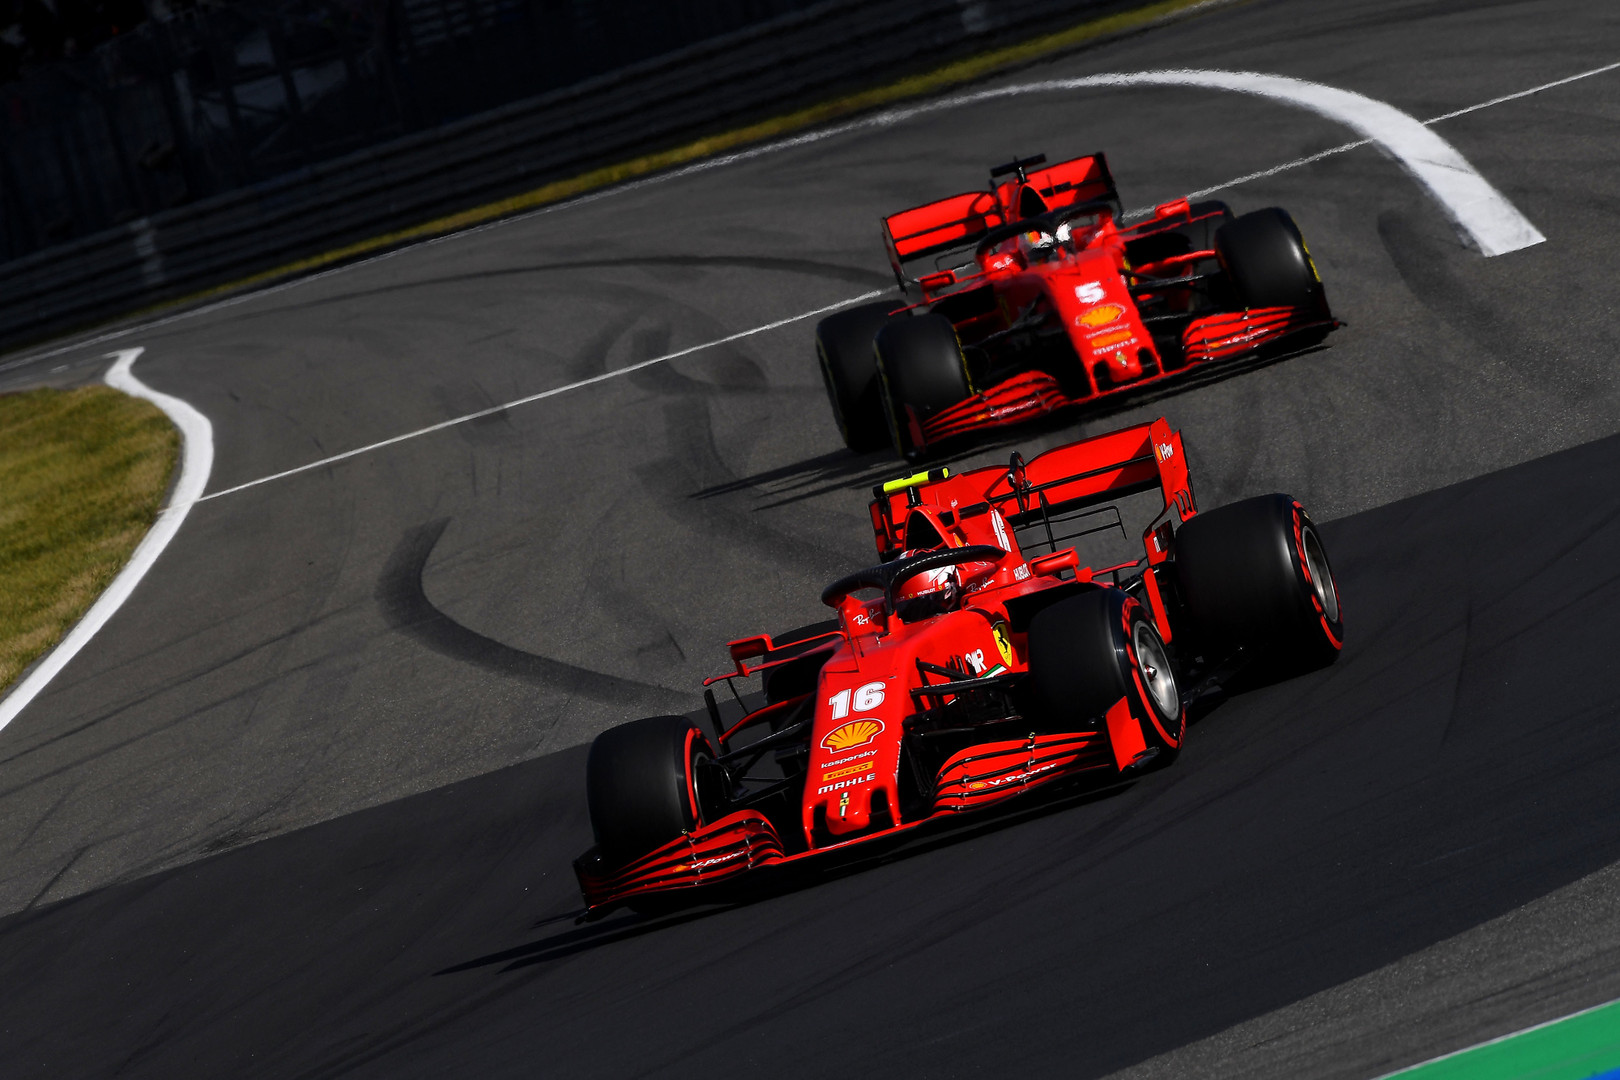 Bolido atnaujinimais patenkinta „Ferrari“: judame teisinga kryptimi